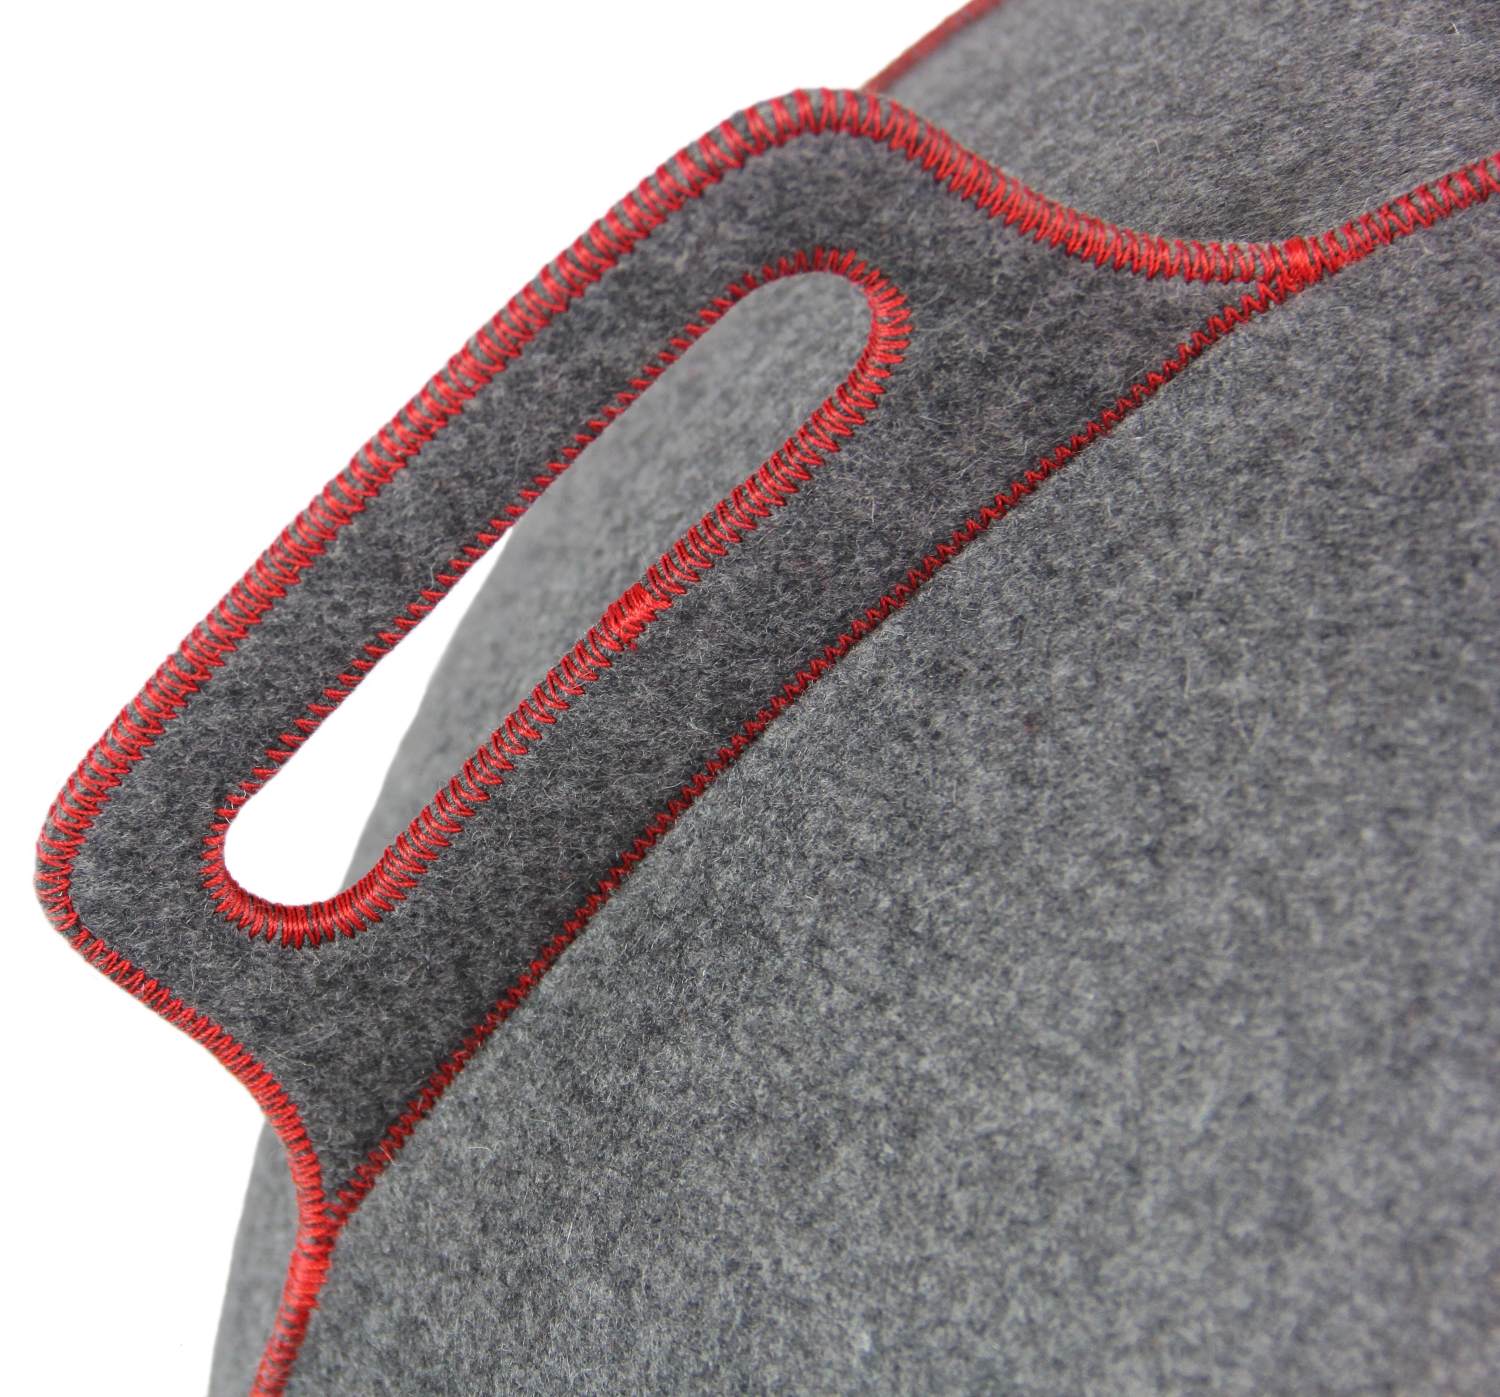 VLUV VELT hochwertige Filz-Sitzball 70-75cm grau/rot ergonomisches Design-Sitzmöbel mit Tragegriff